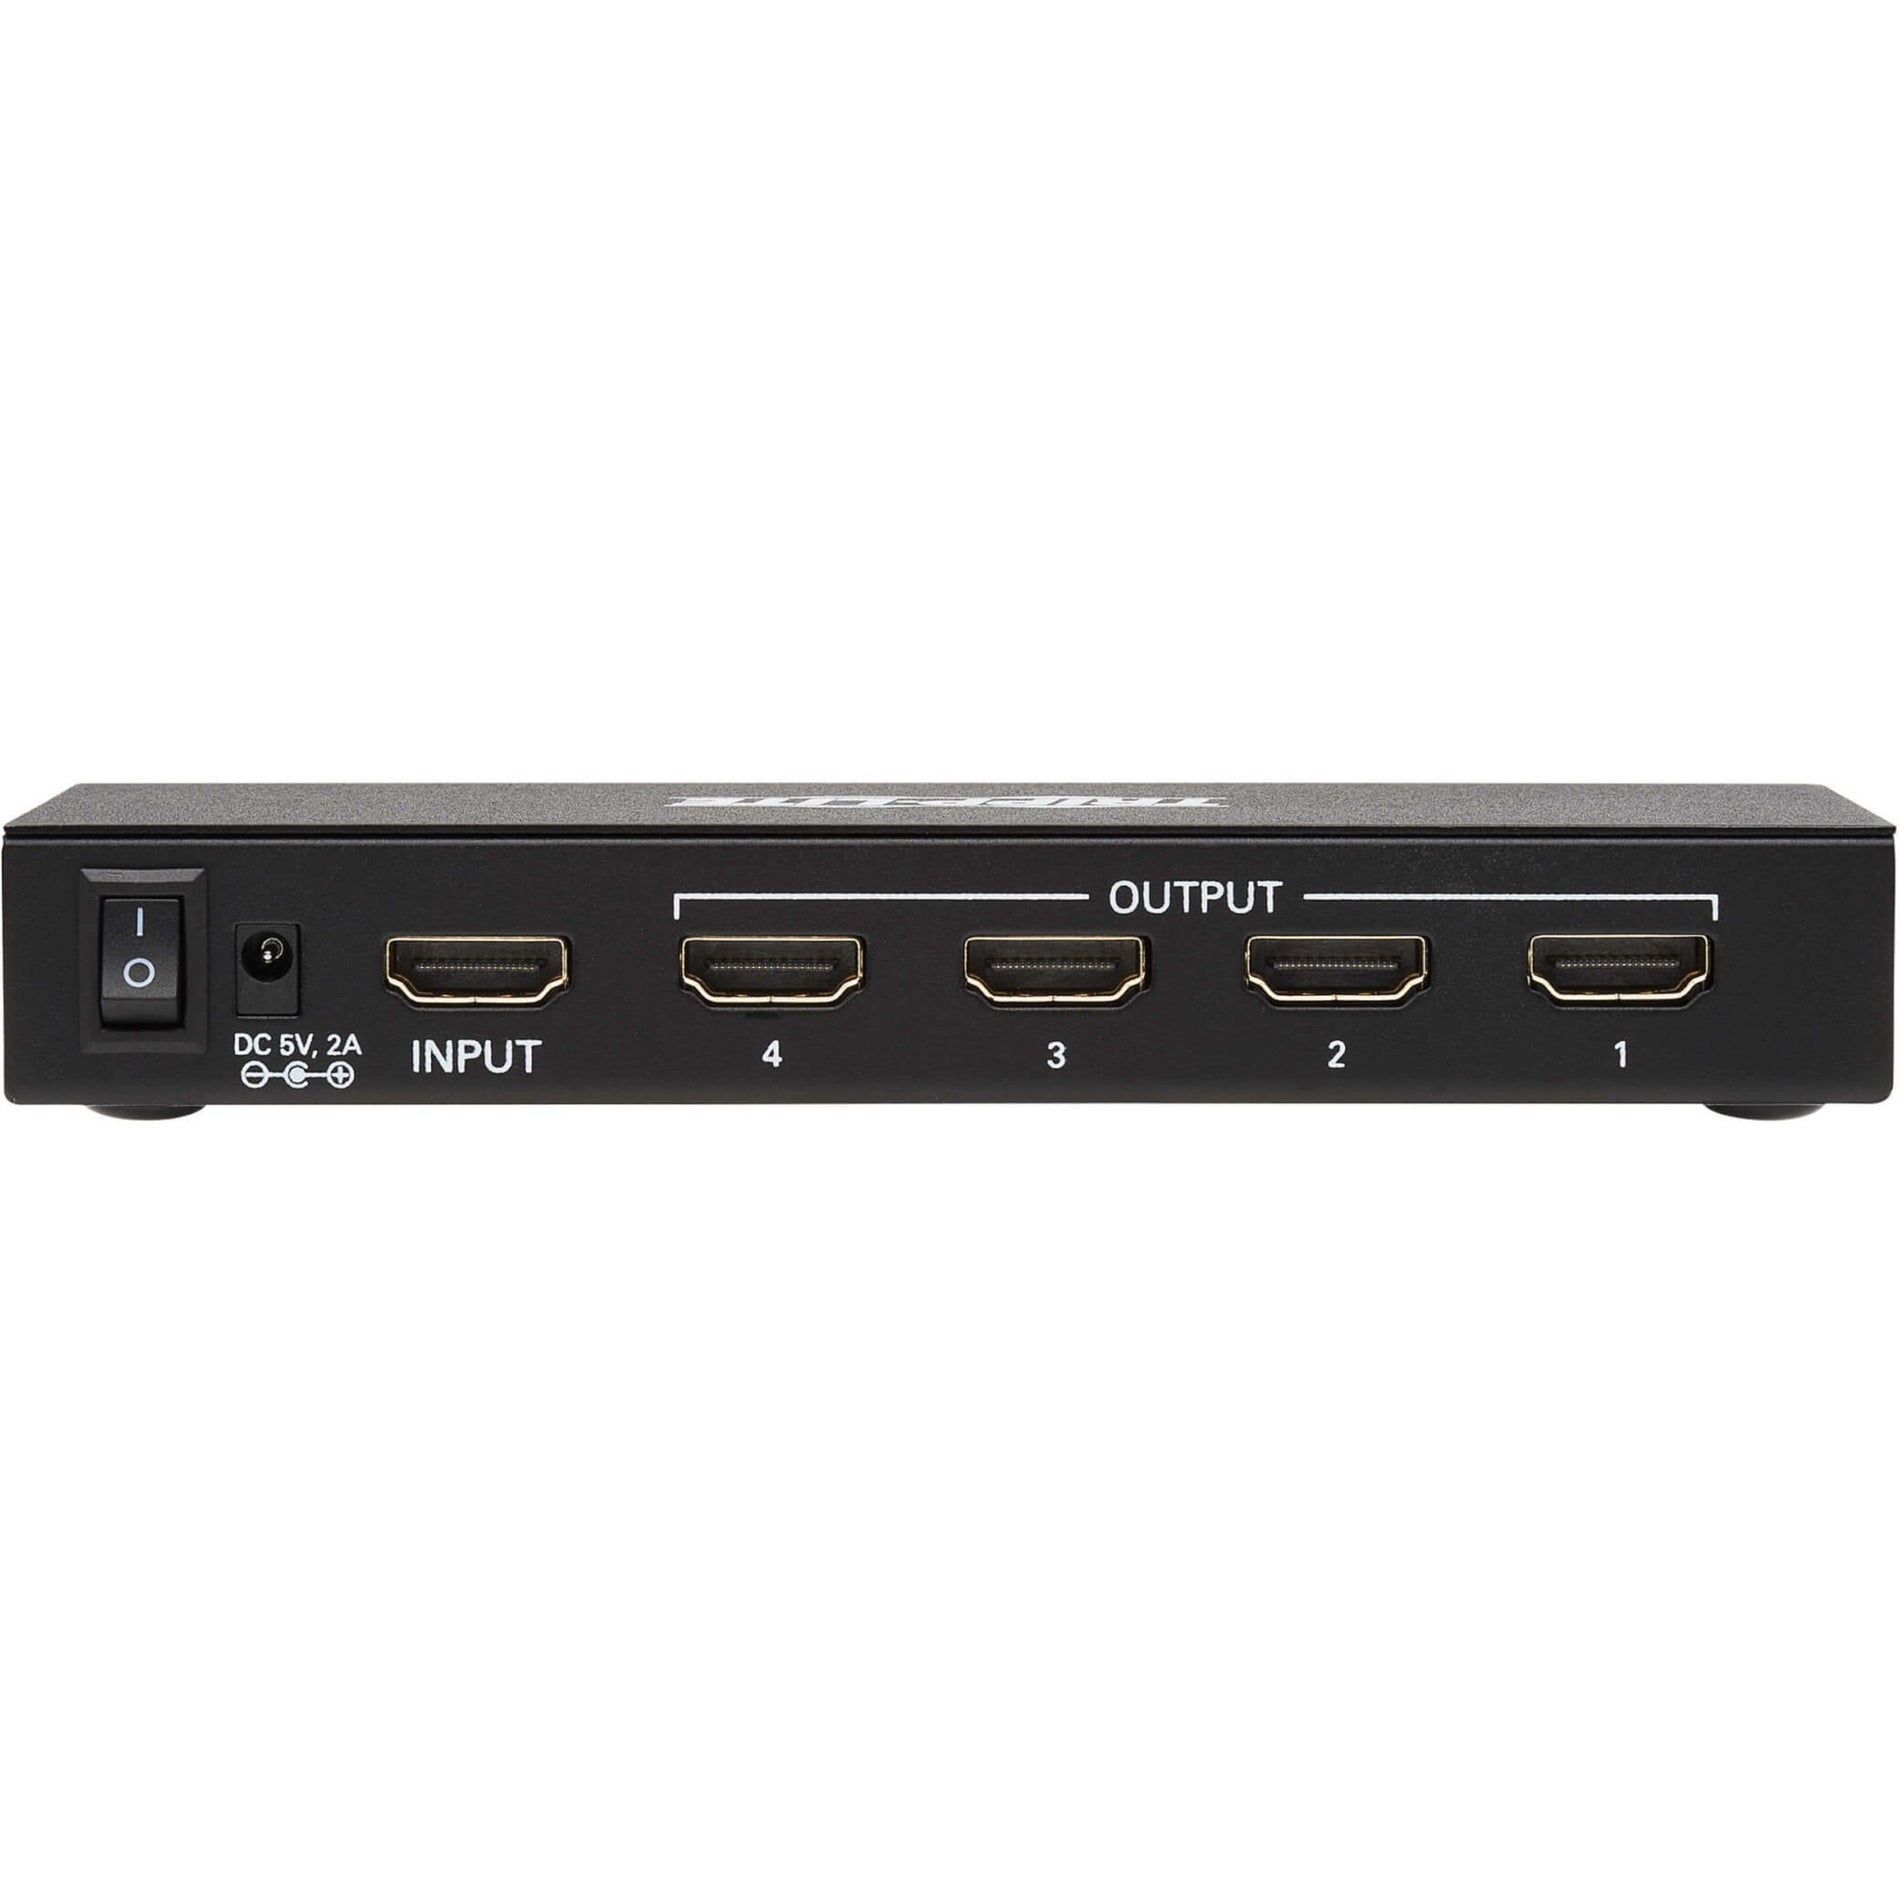 Tripp Lite B118-004-UHDINT 4-Port HDMI Splitter - UHD 4K, International Plug Adapters